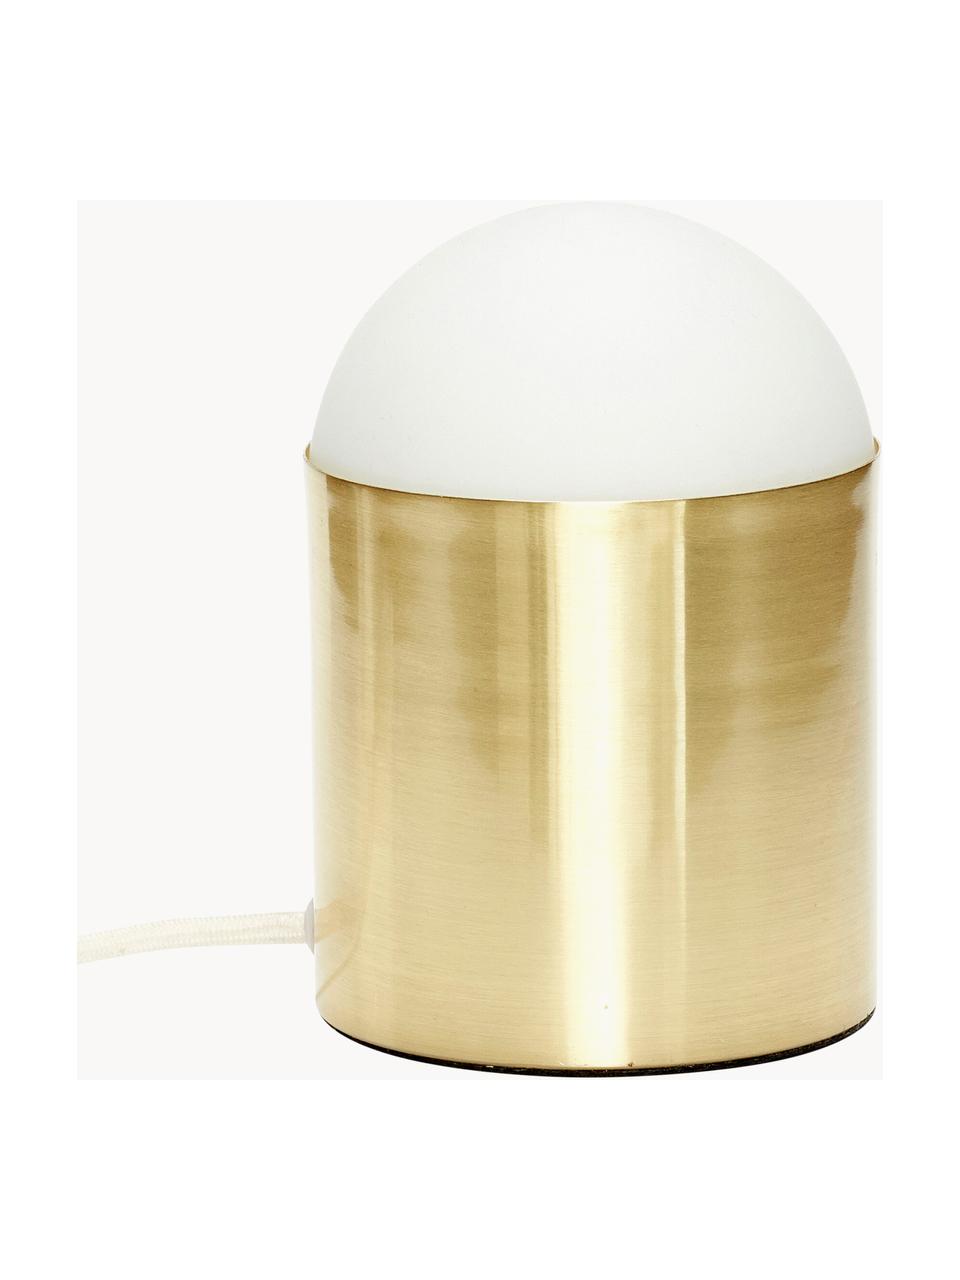 Lampada da tavolo piccola Sculpture, Paralume: vetro, Bianco, dorato, Ø 12 x Alt. 19 cm